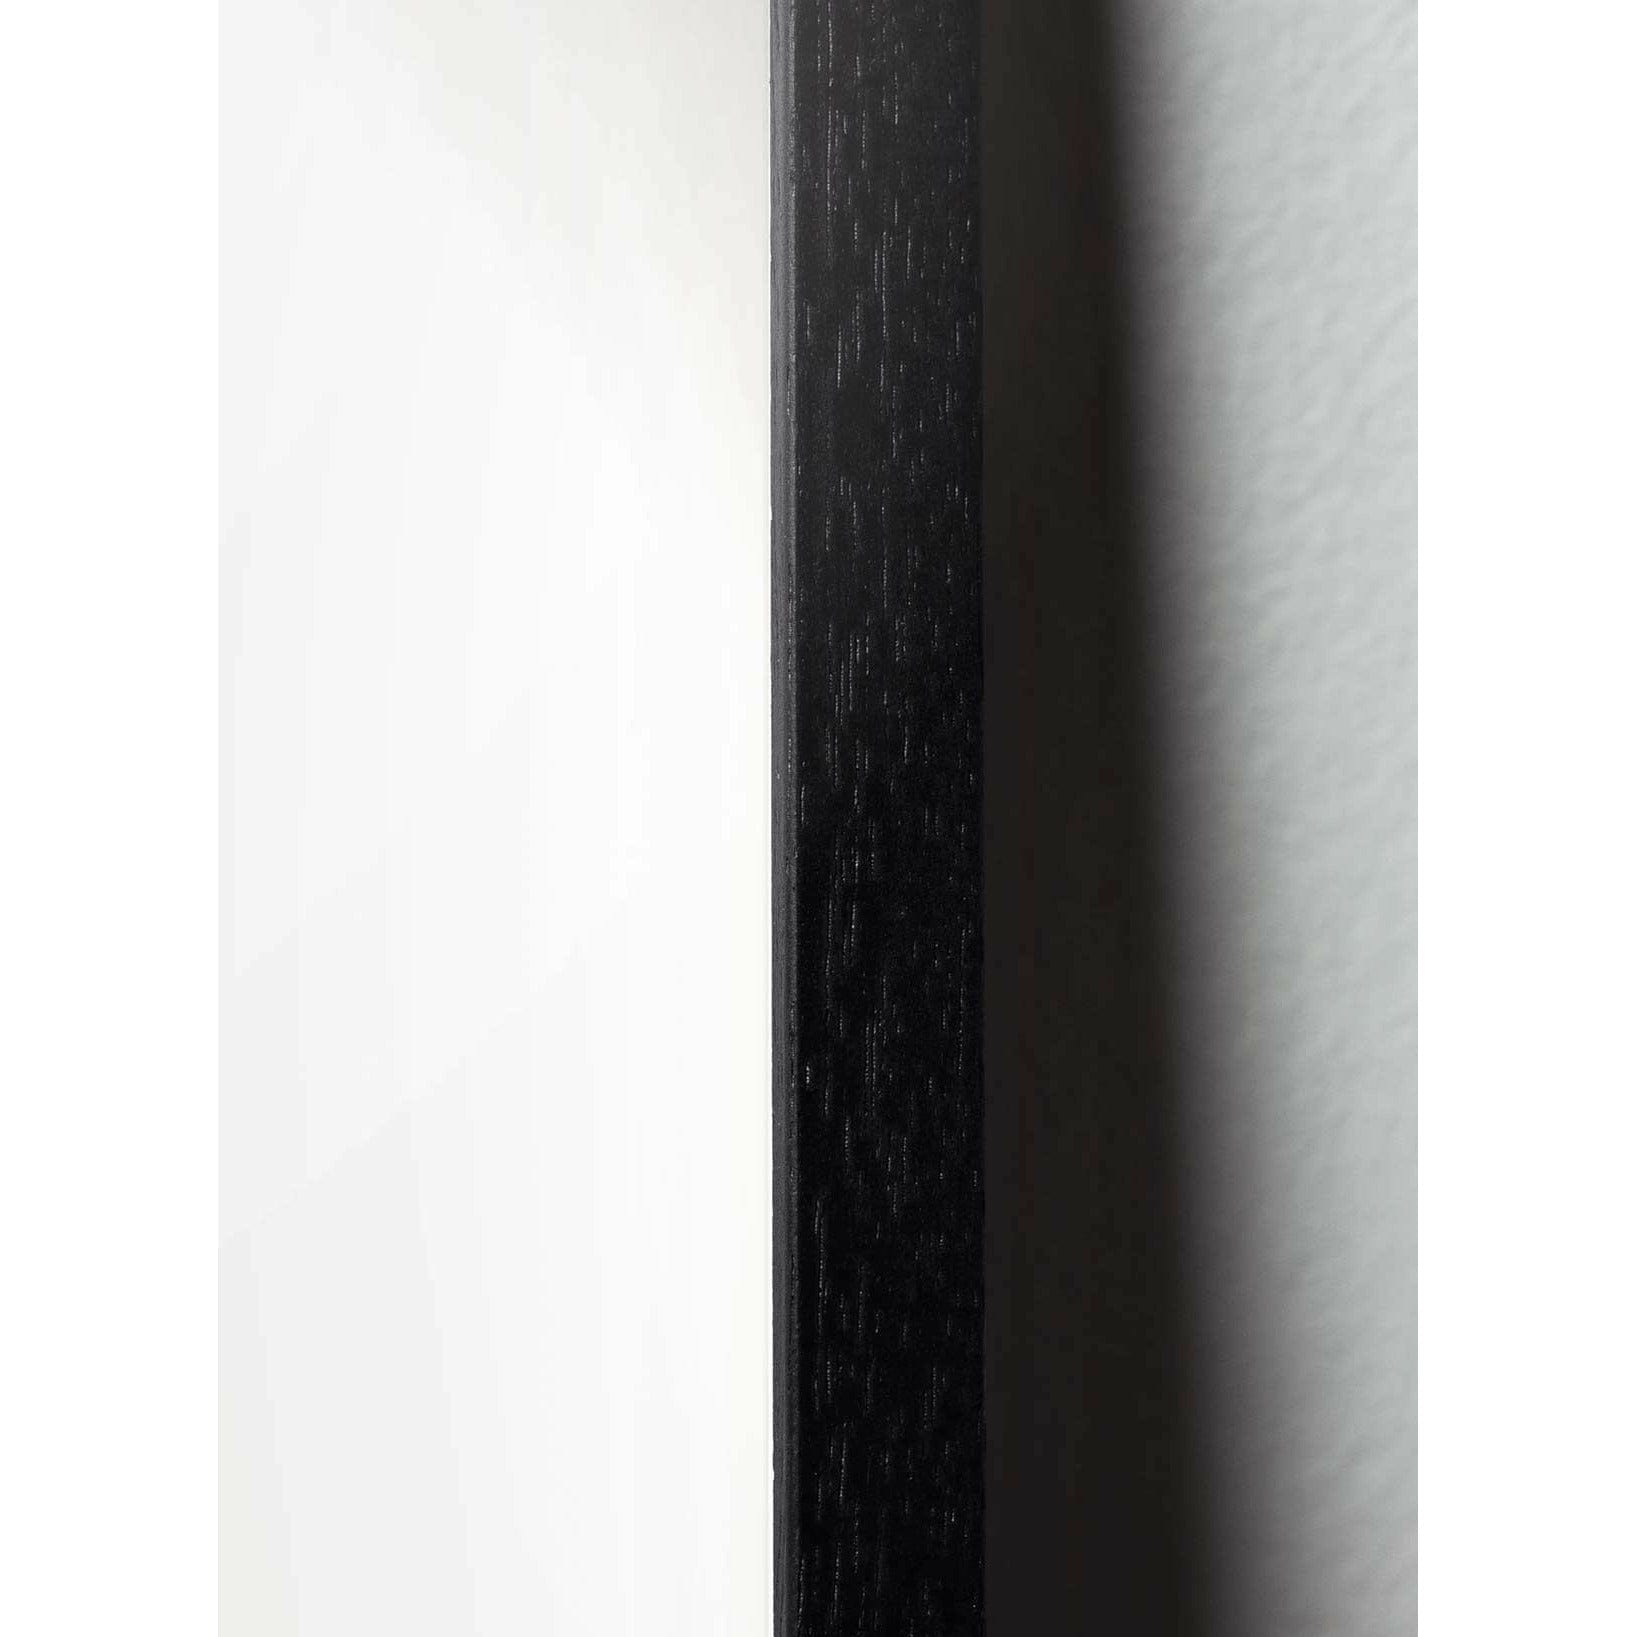 Hugarfóstur sleppir klassískum veggspjaldi, ramma í svörtum lakkuðum viði 50x70 cm, sandlitaður bakgrunnur